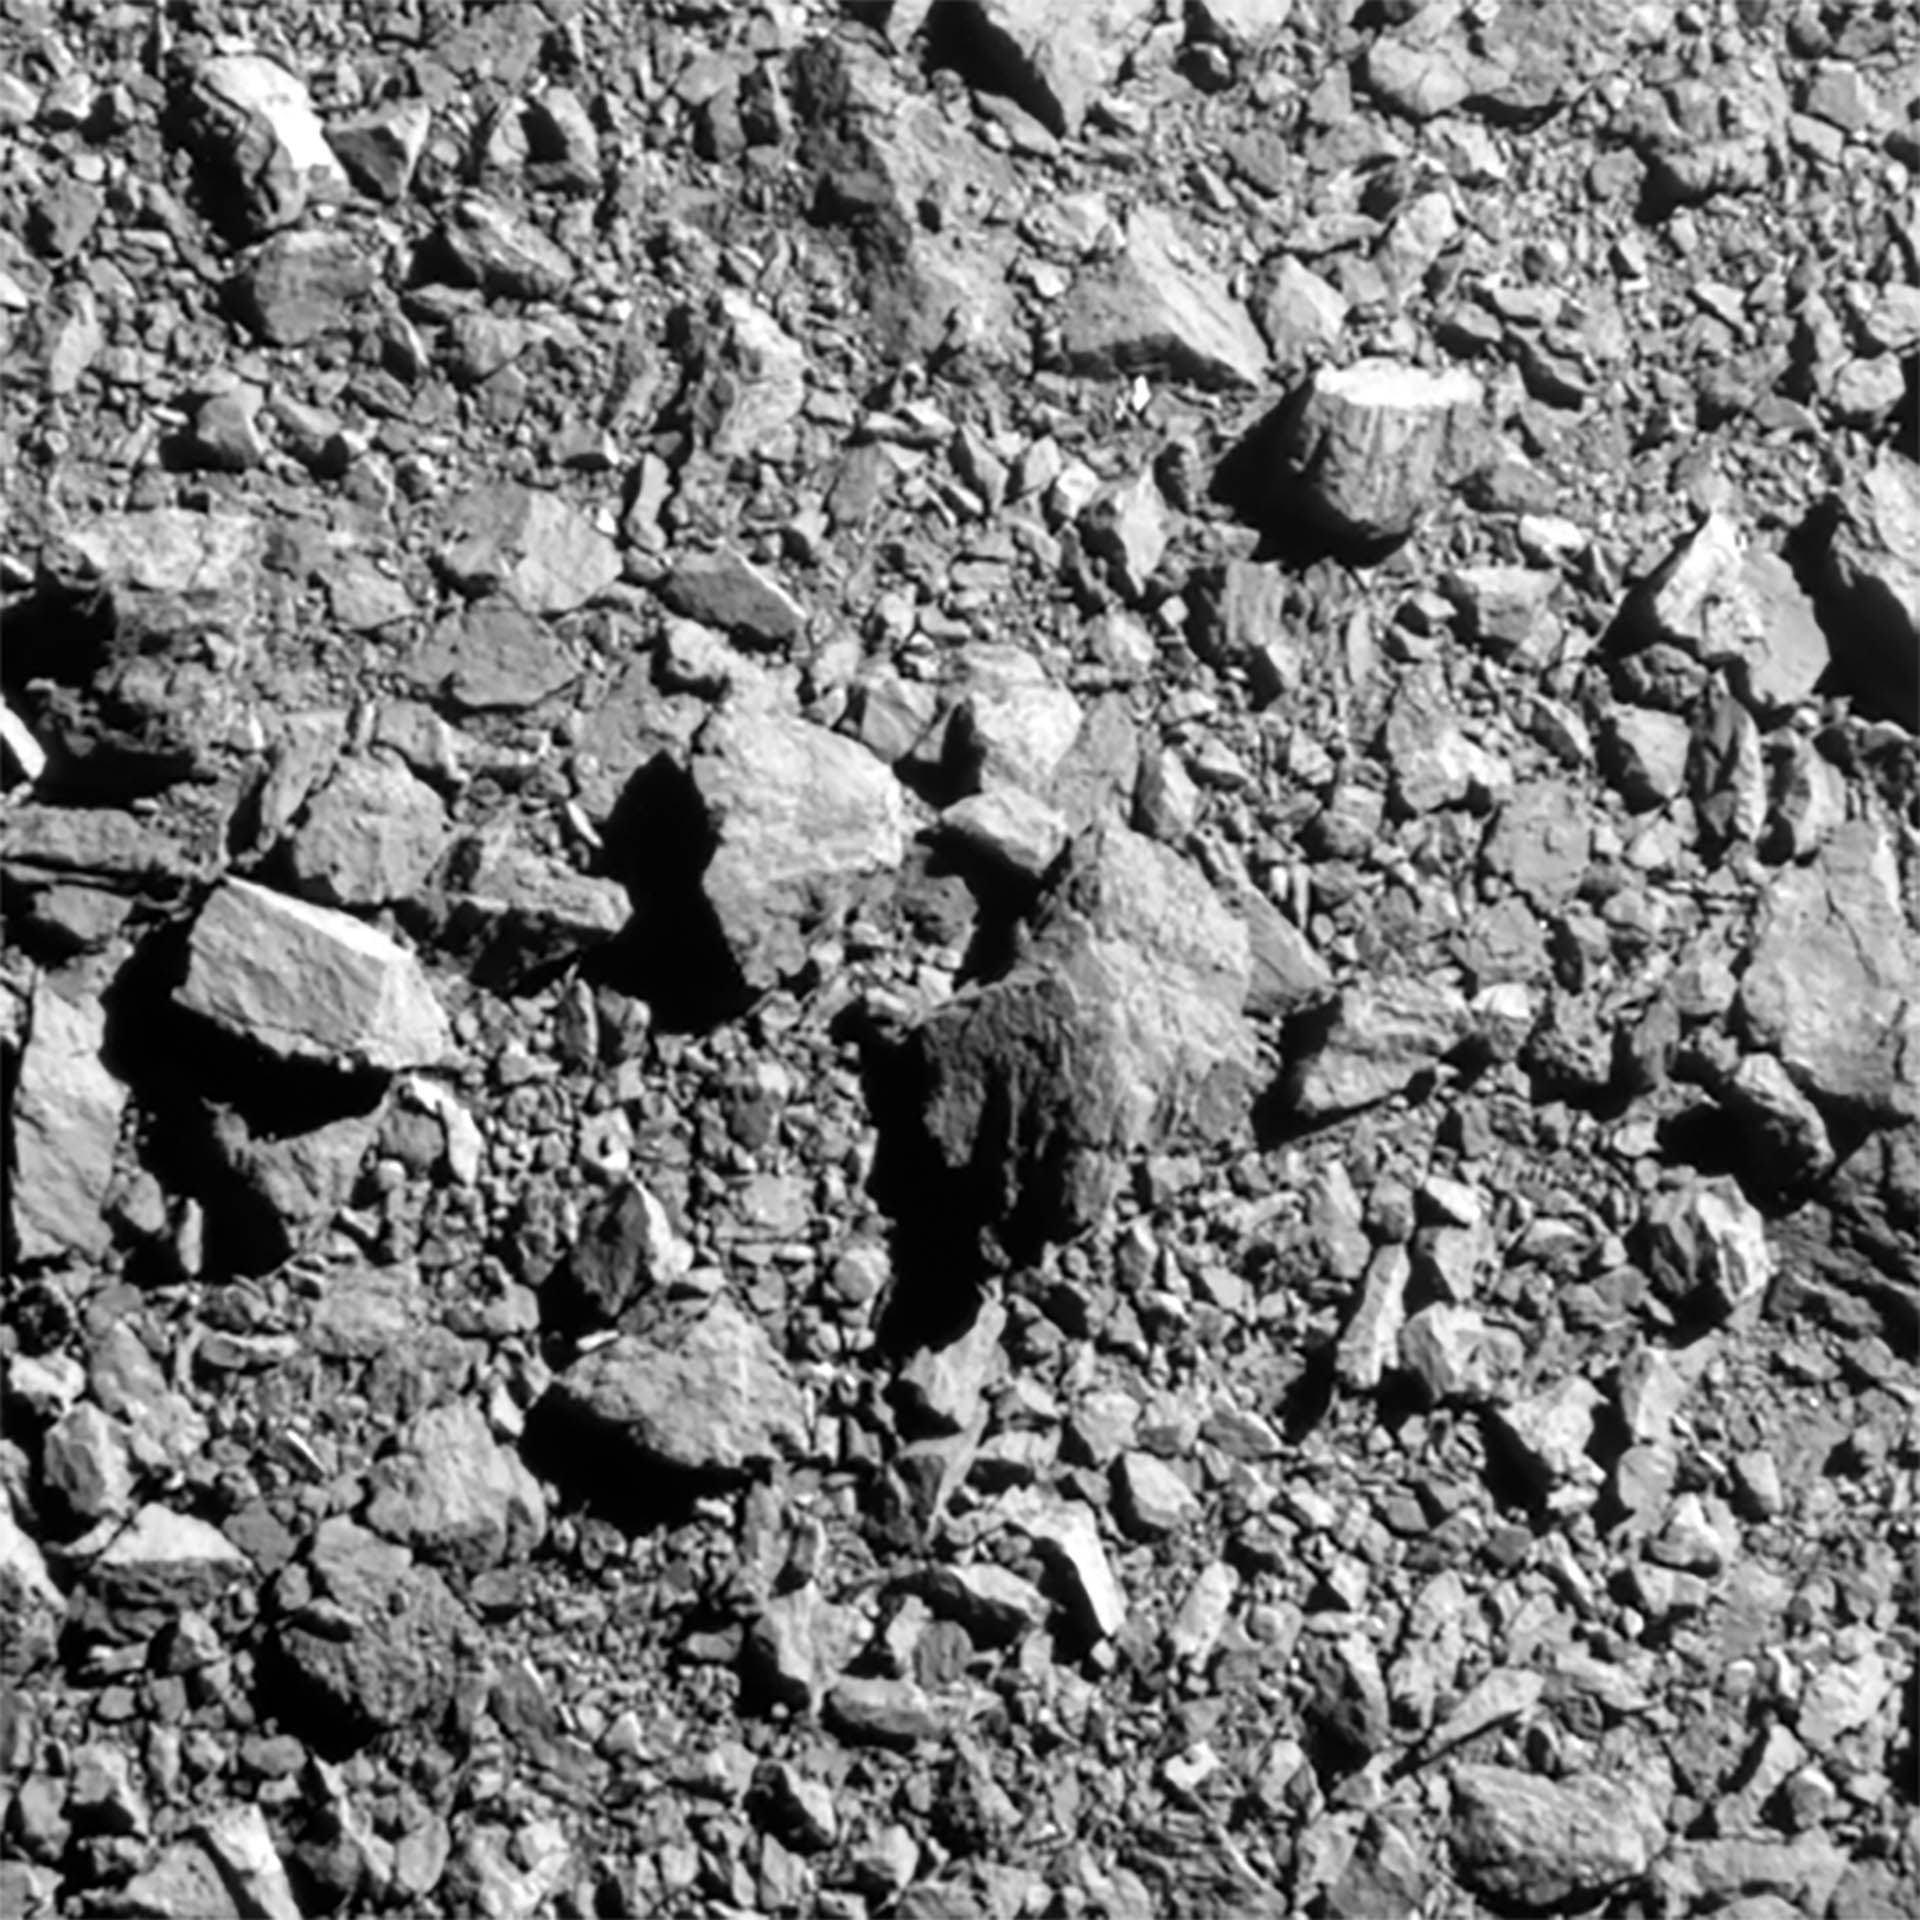 Las fotos captadas por Hubble indica que el tamaño de las 37 rocas expulsadas del asteroide Dimorphos oscila entre 1 y 6,7 metros de diámetro (NASA)